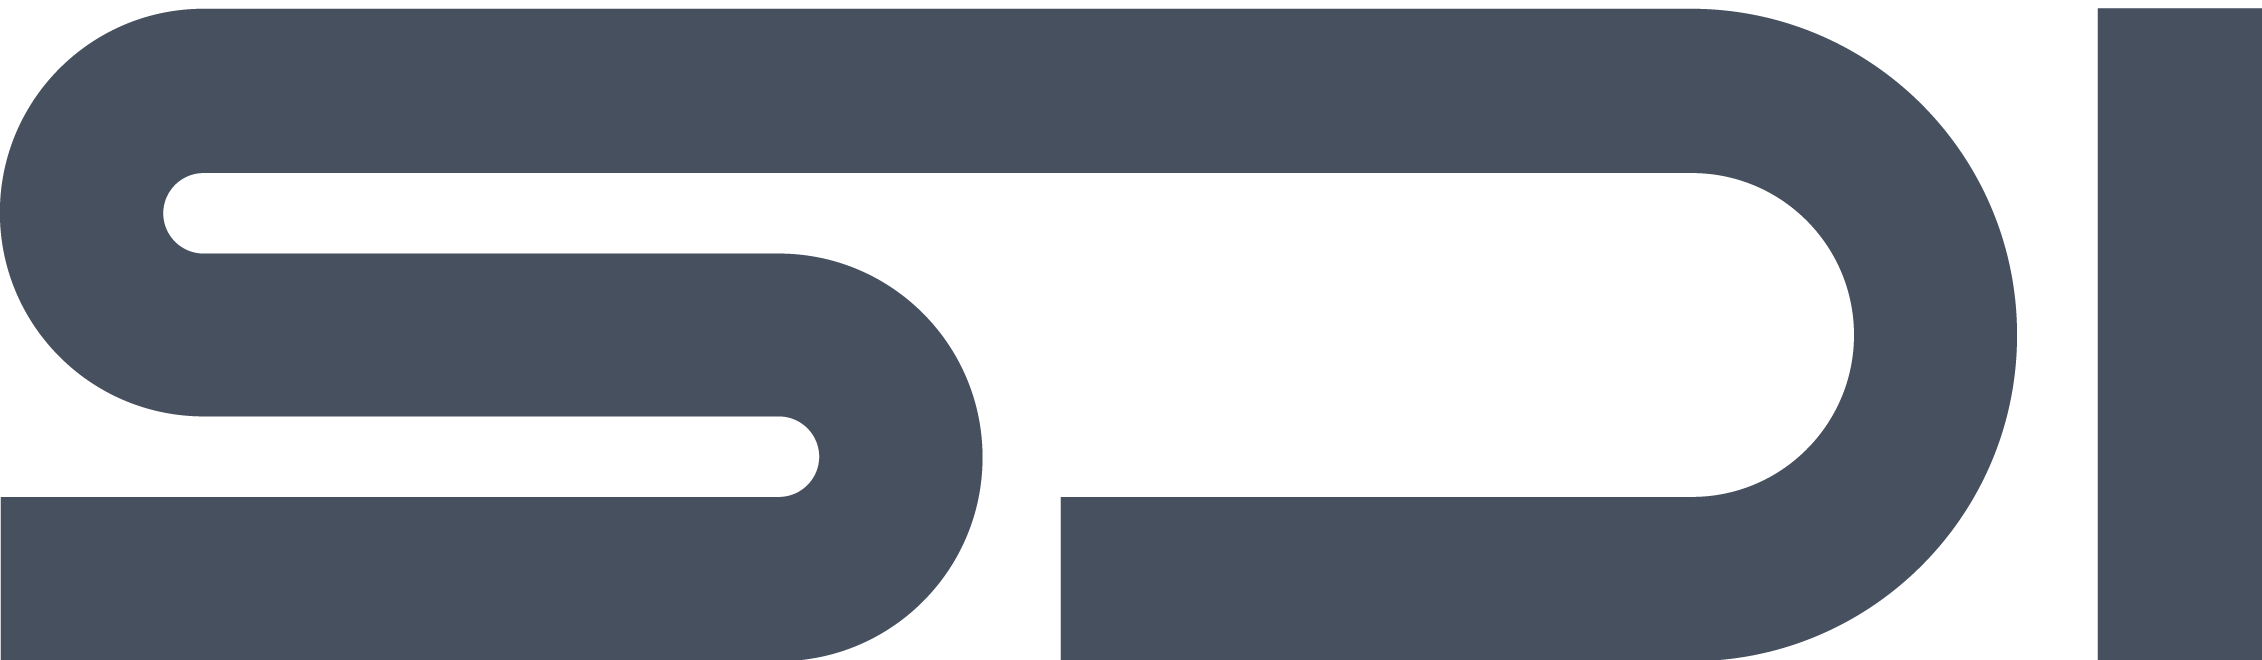 Stirling Design International logo